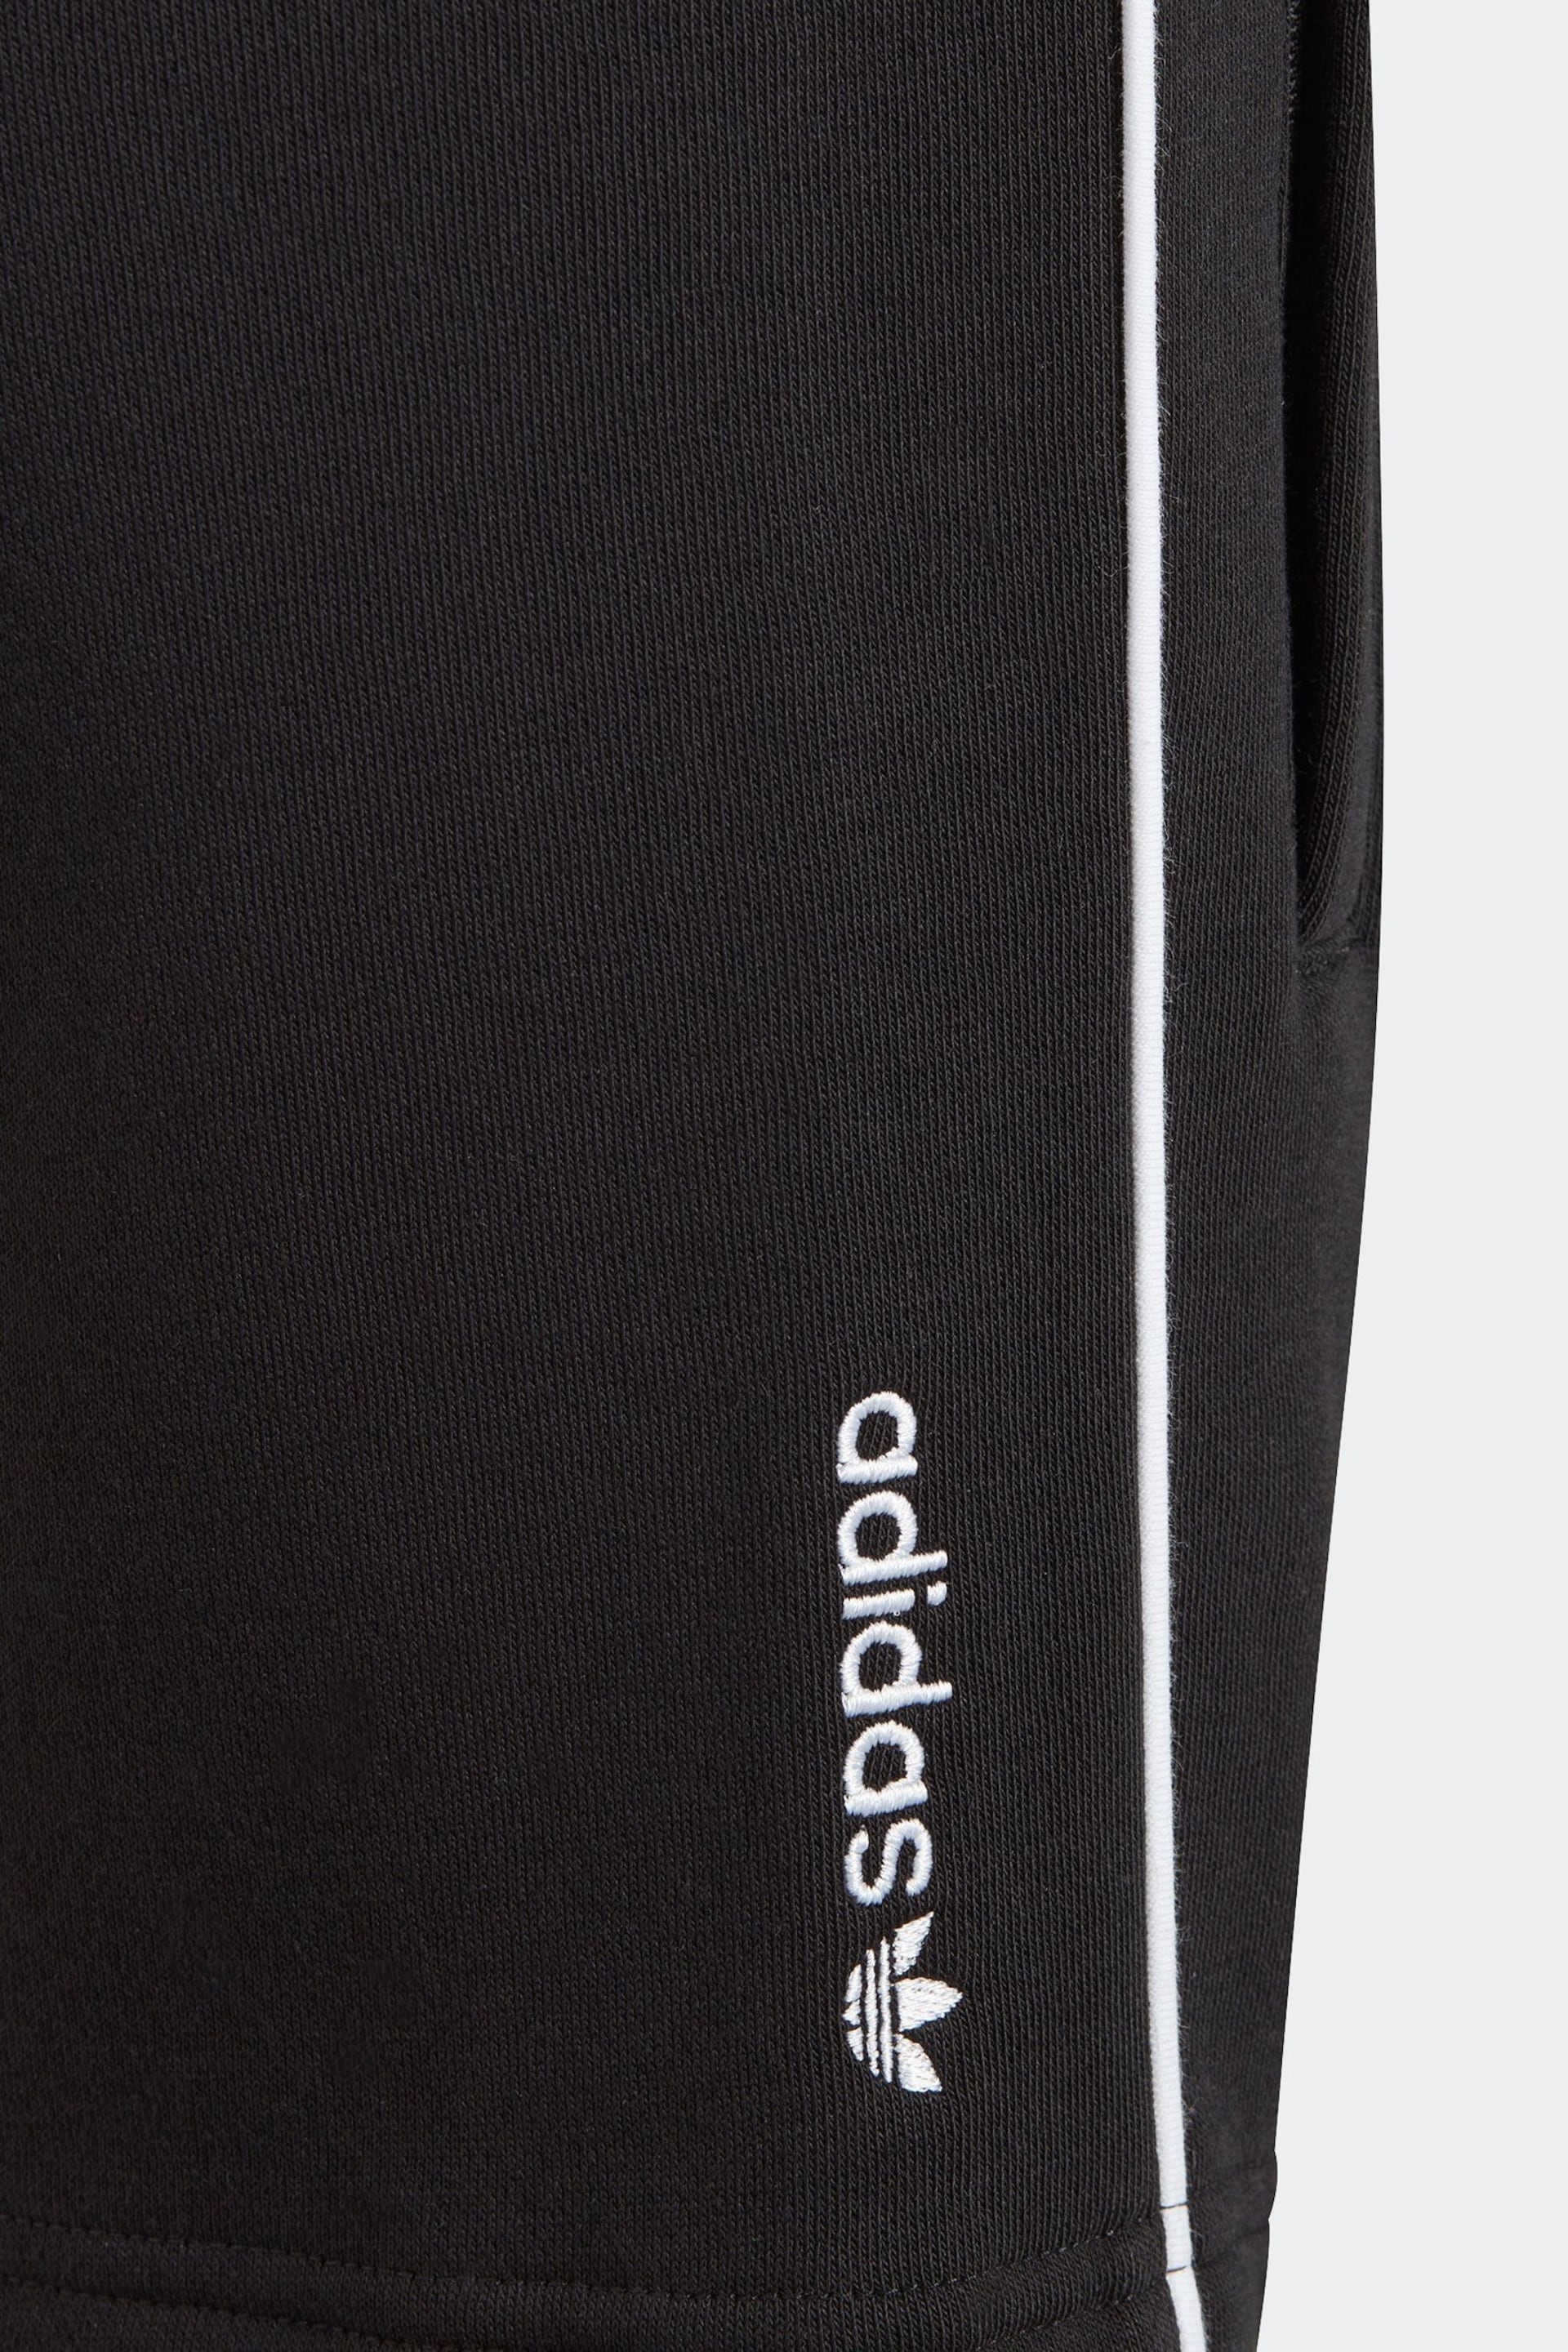 adidas Originals Adicolor T-Shirt and Shorts Set - Image 7 of 7